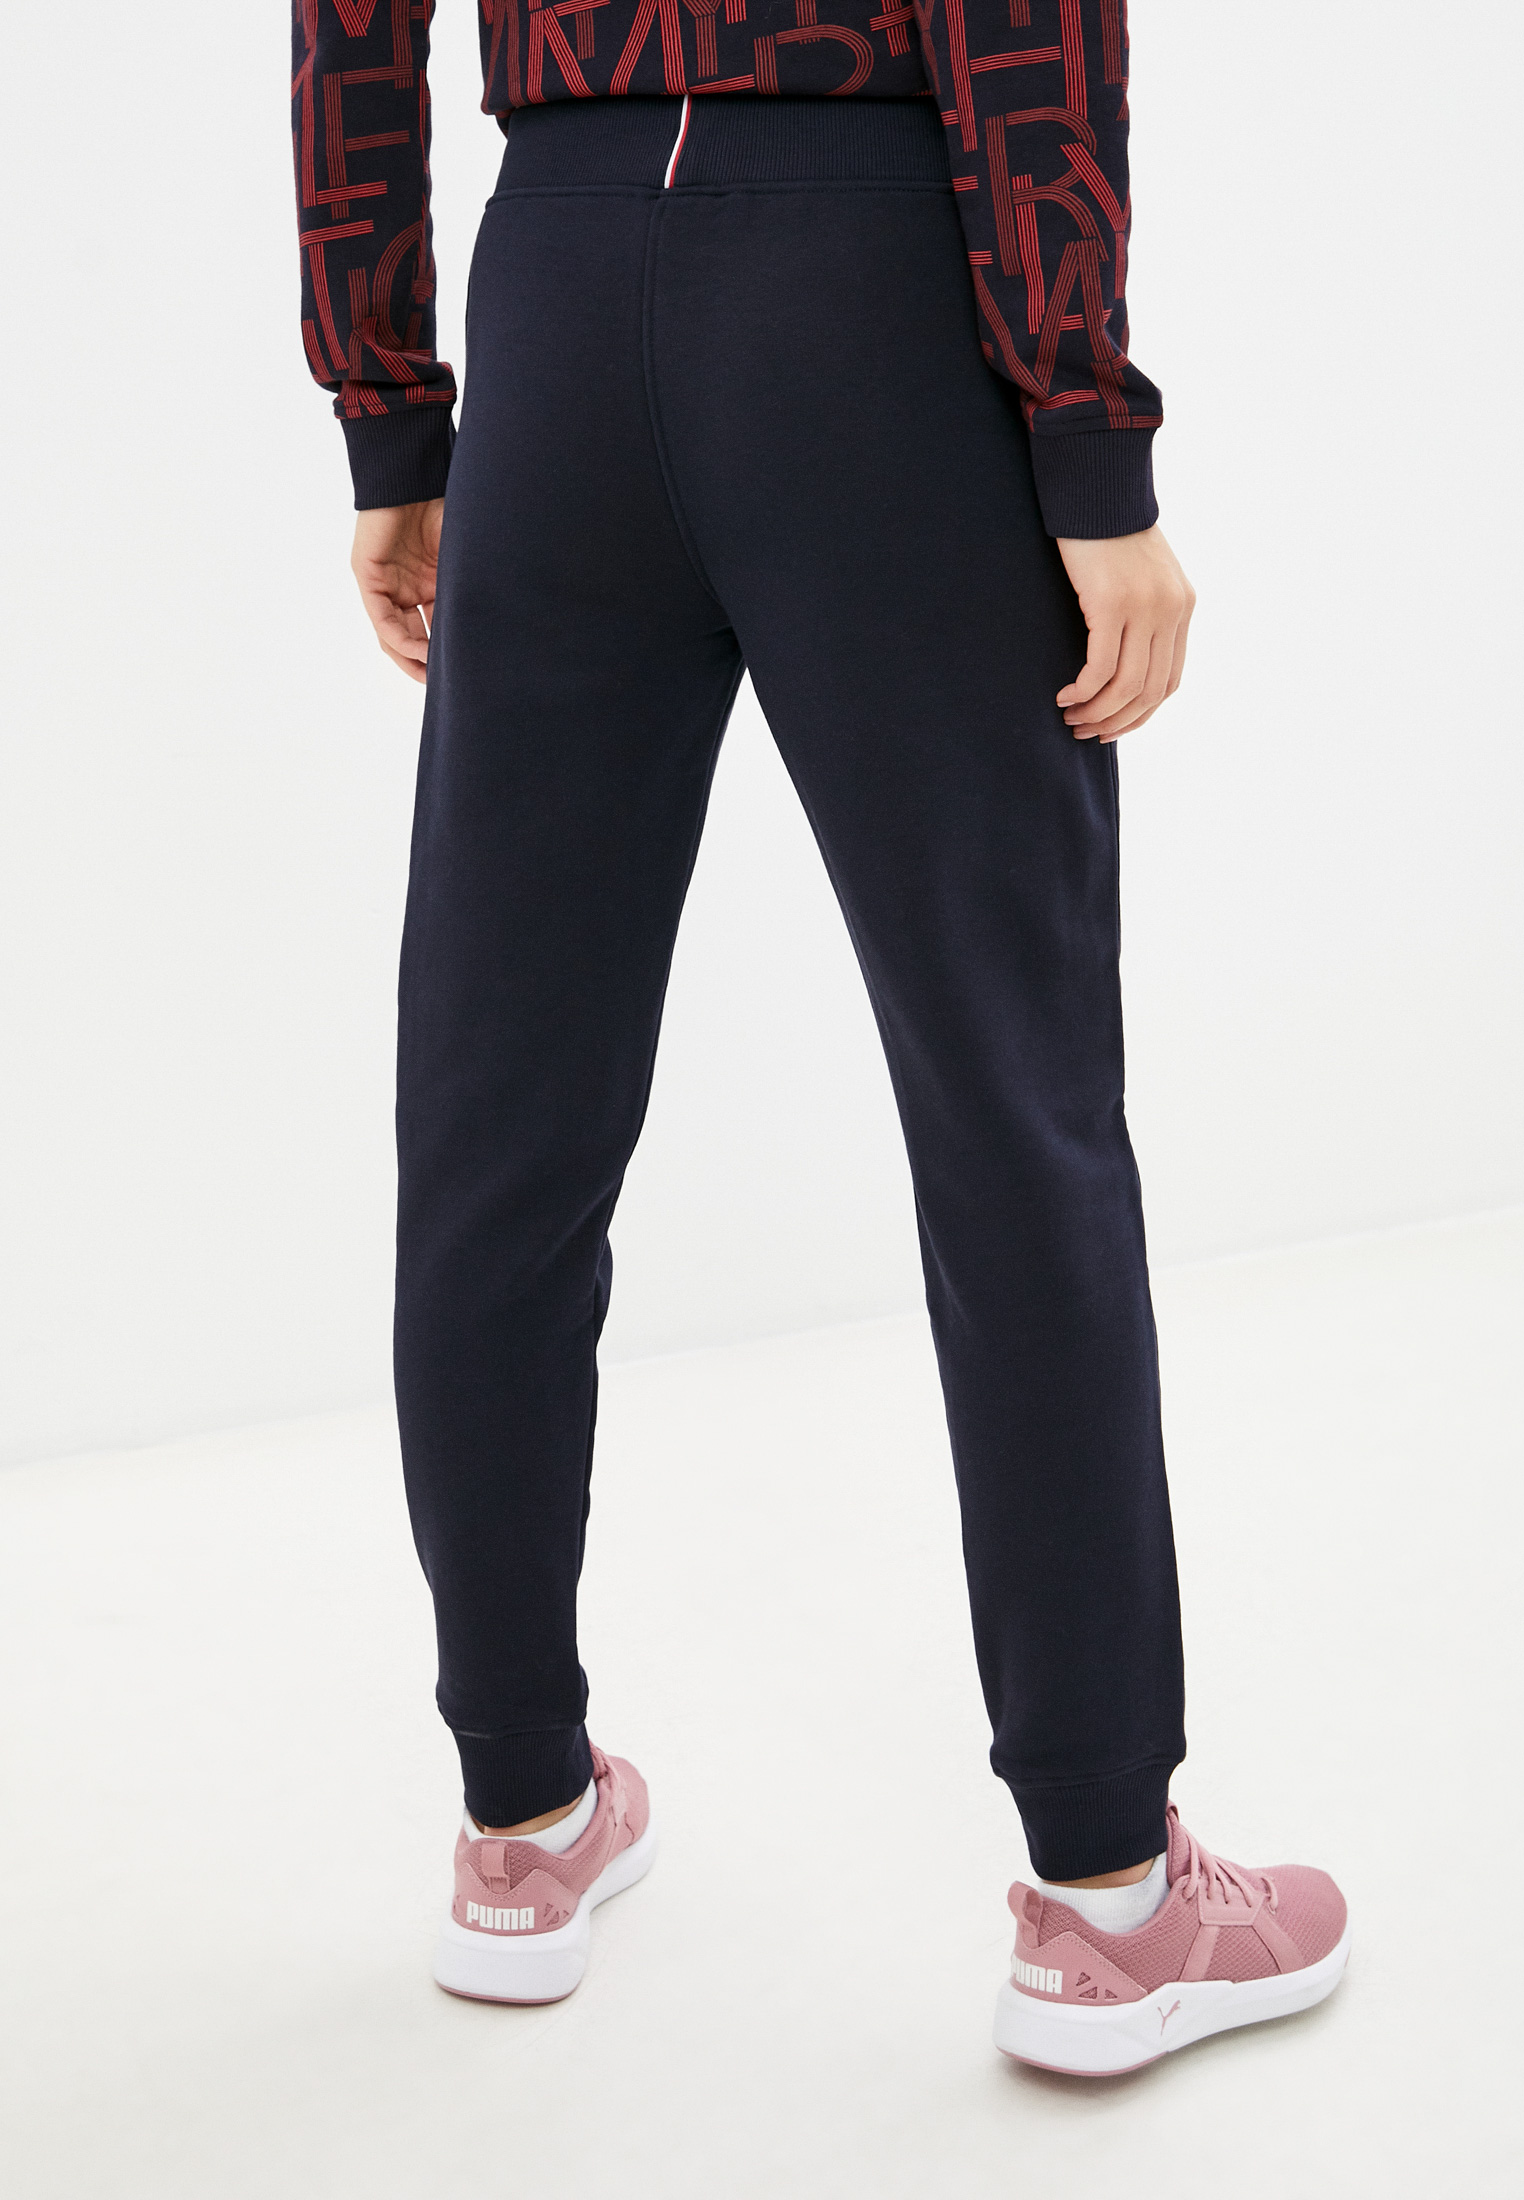 Женские спортивные брюки Tommy Hilfiger (Томми Хилфигер) S10S101163: изображение 3